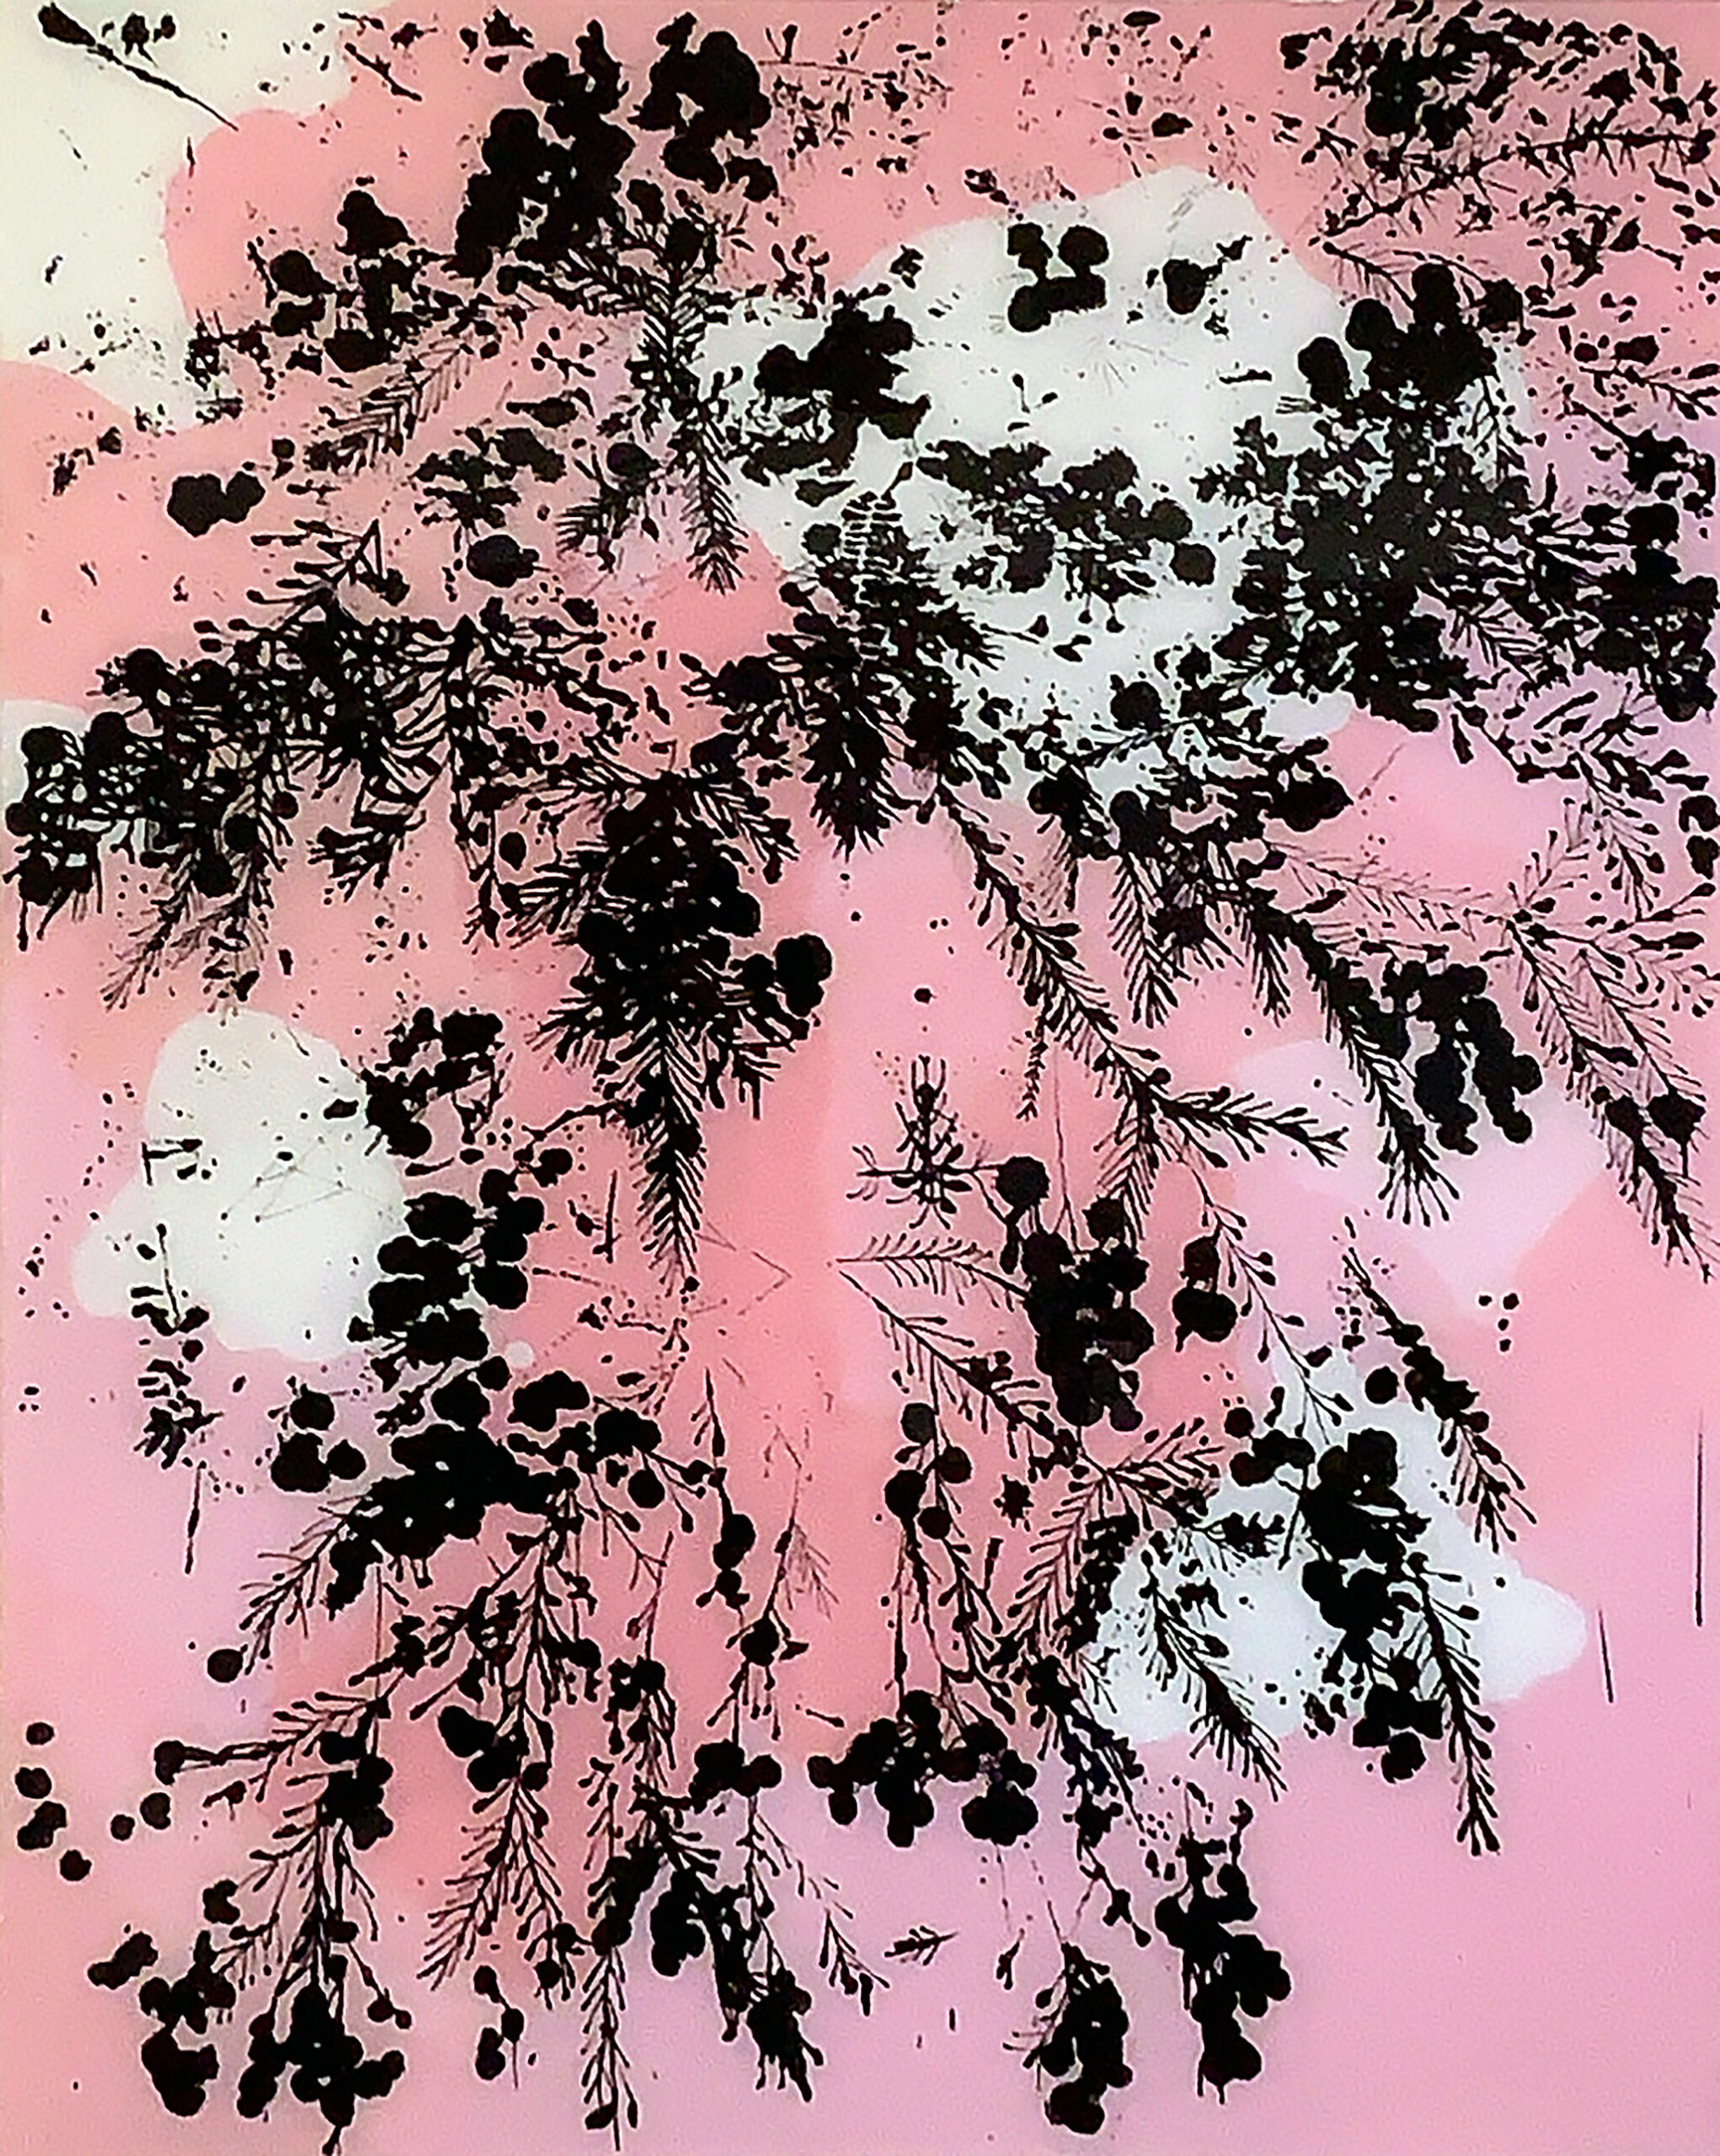 Mark Hislop 'Fern Tree Gully 3' acrylic on acrylic sheet 165 x 122cm $9,000